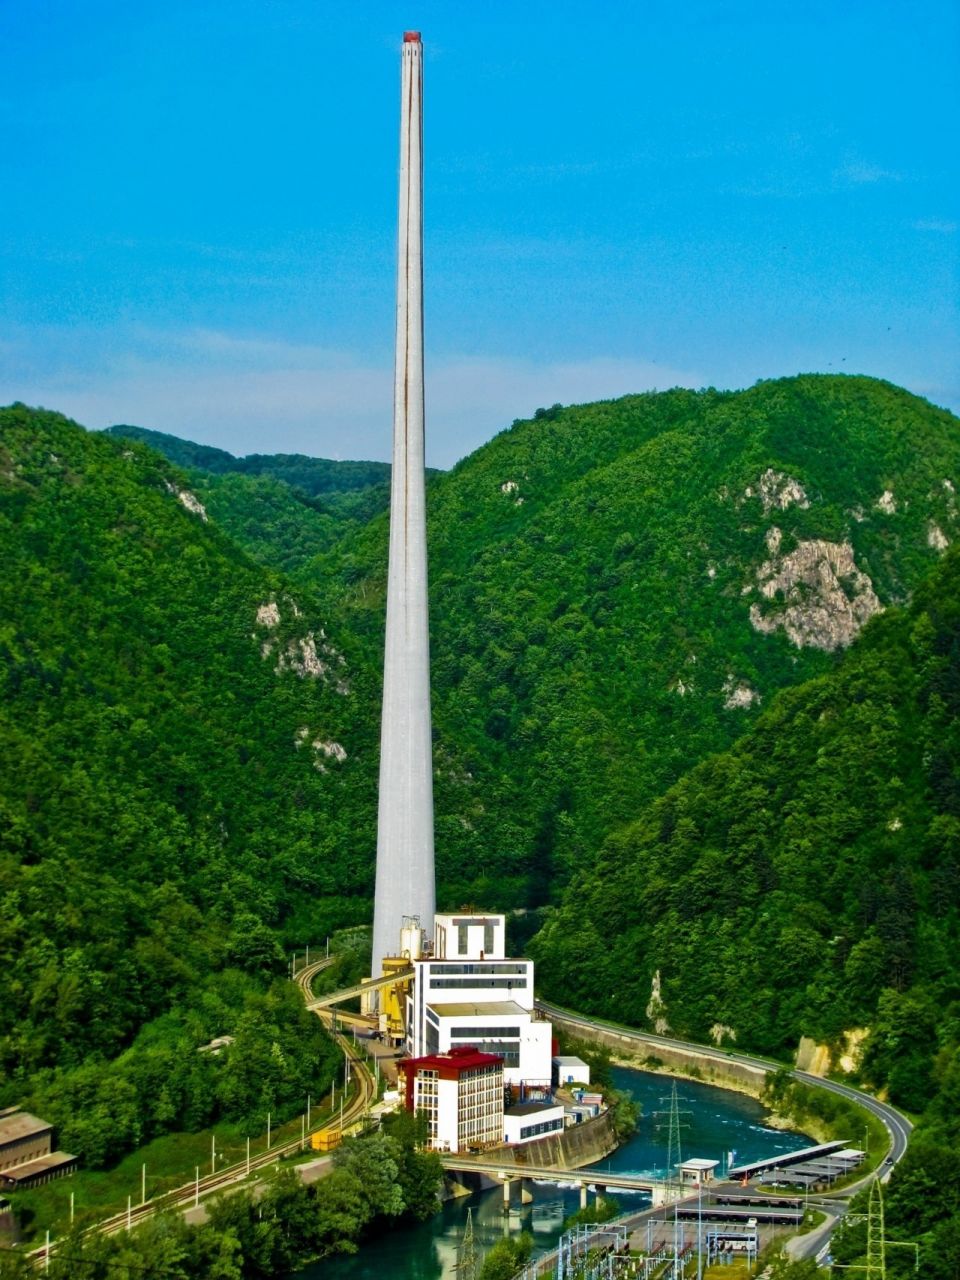 Самая высокая труба ЕвропыНа фото - Trboveljski dimnik (Trbovlje Chimney), труба на тепловой электростанции в городе Трбовле, расположенном в центральной части Словении на реке Сава.ТЭС возведена в 1915 году, и с тех пор неоднократно модернизировалась и реконструировалась. В настоящее время электростанция состоит из двух блоков: первый блок мощностью 125 МВт — паросиловой, отвечающий за производство электроэнергии и использующий бурый уголь в качестве топлива; второй блок (мощностью 63 МВт) — газовый, также производит электроэнергию и использует природный газ в качестве резервного топлива.Дымовая труба на фото, построенная в рамках очередной реконструкции, построена в 1976 году и является самой высокой в Европе. Её высота составляет 360 м, расход бетона — 11866 м³, расход арматуры - 1079 т. Строительство завершилось всего за 210 дней.Кстати, самая высокая труба в мире - 419,7 м - расположена на Экибастузской ГРЭС-2 в Казахстане.